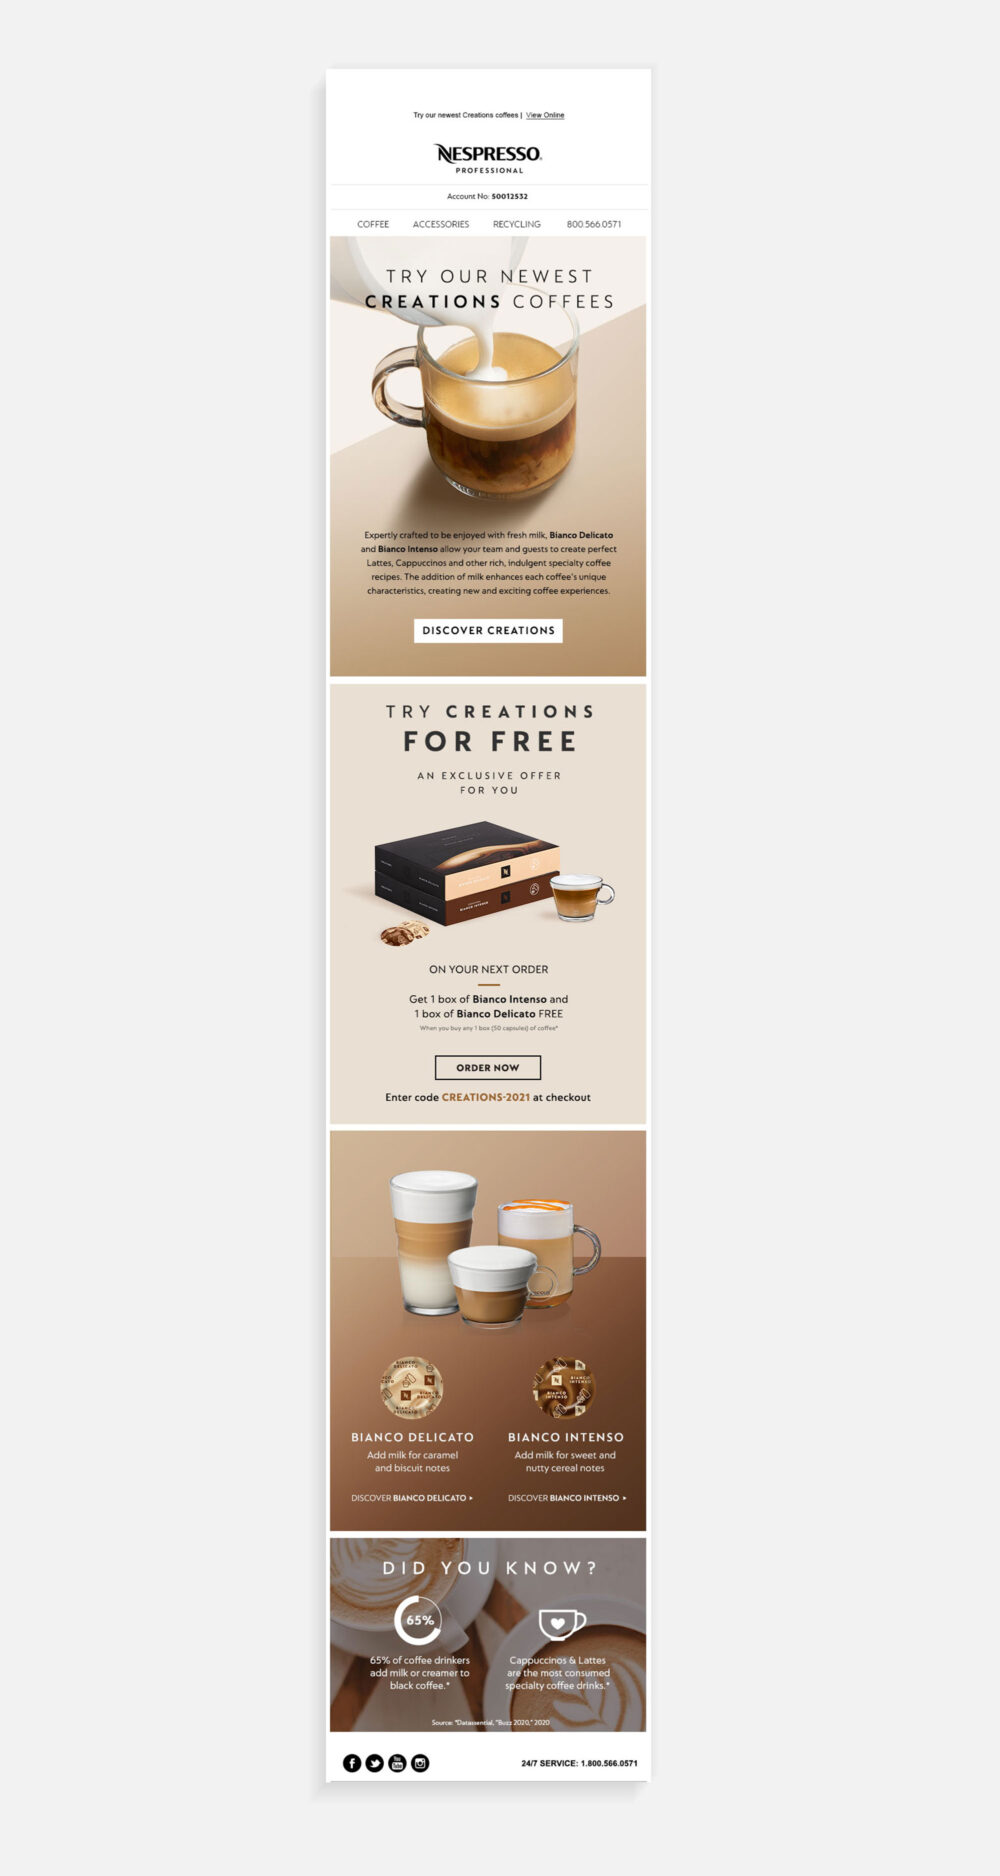 Email design for Nespresso